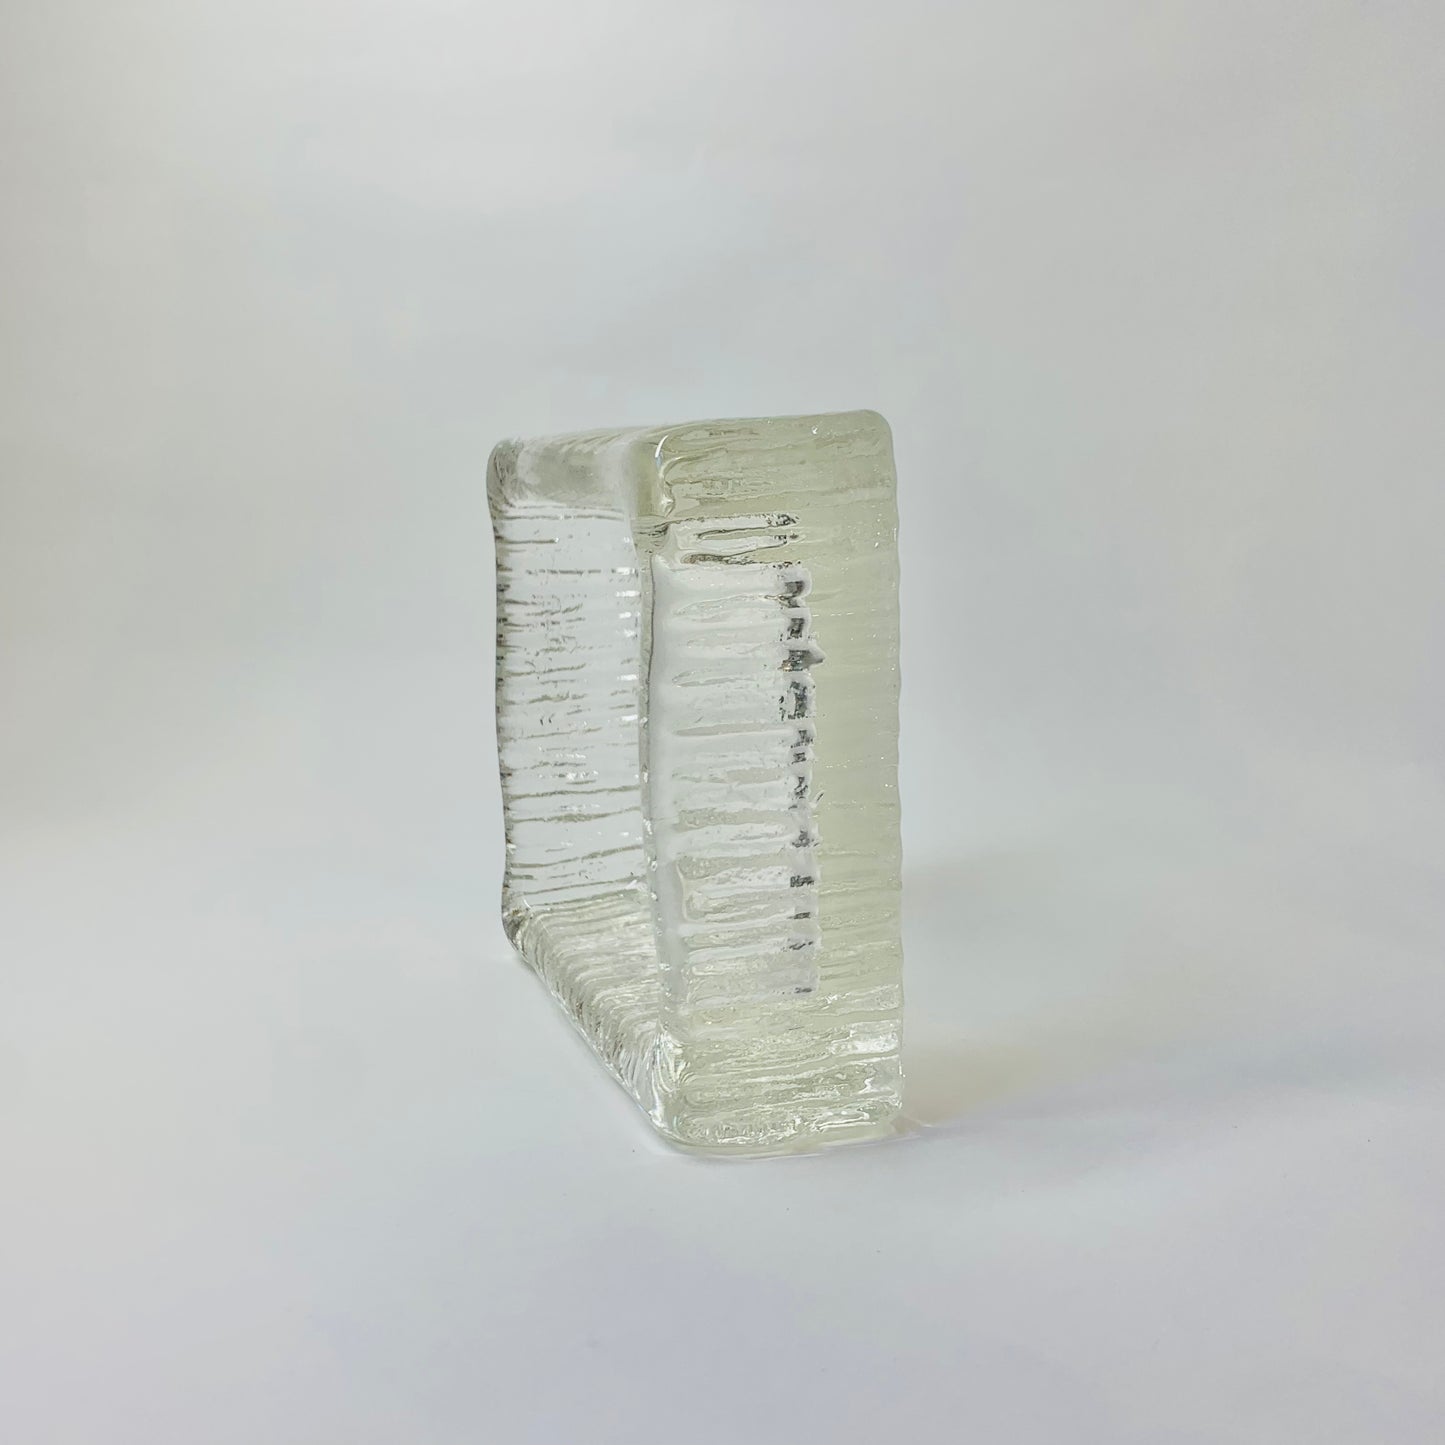 ICE GLASS TRINKET BOWL